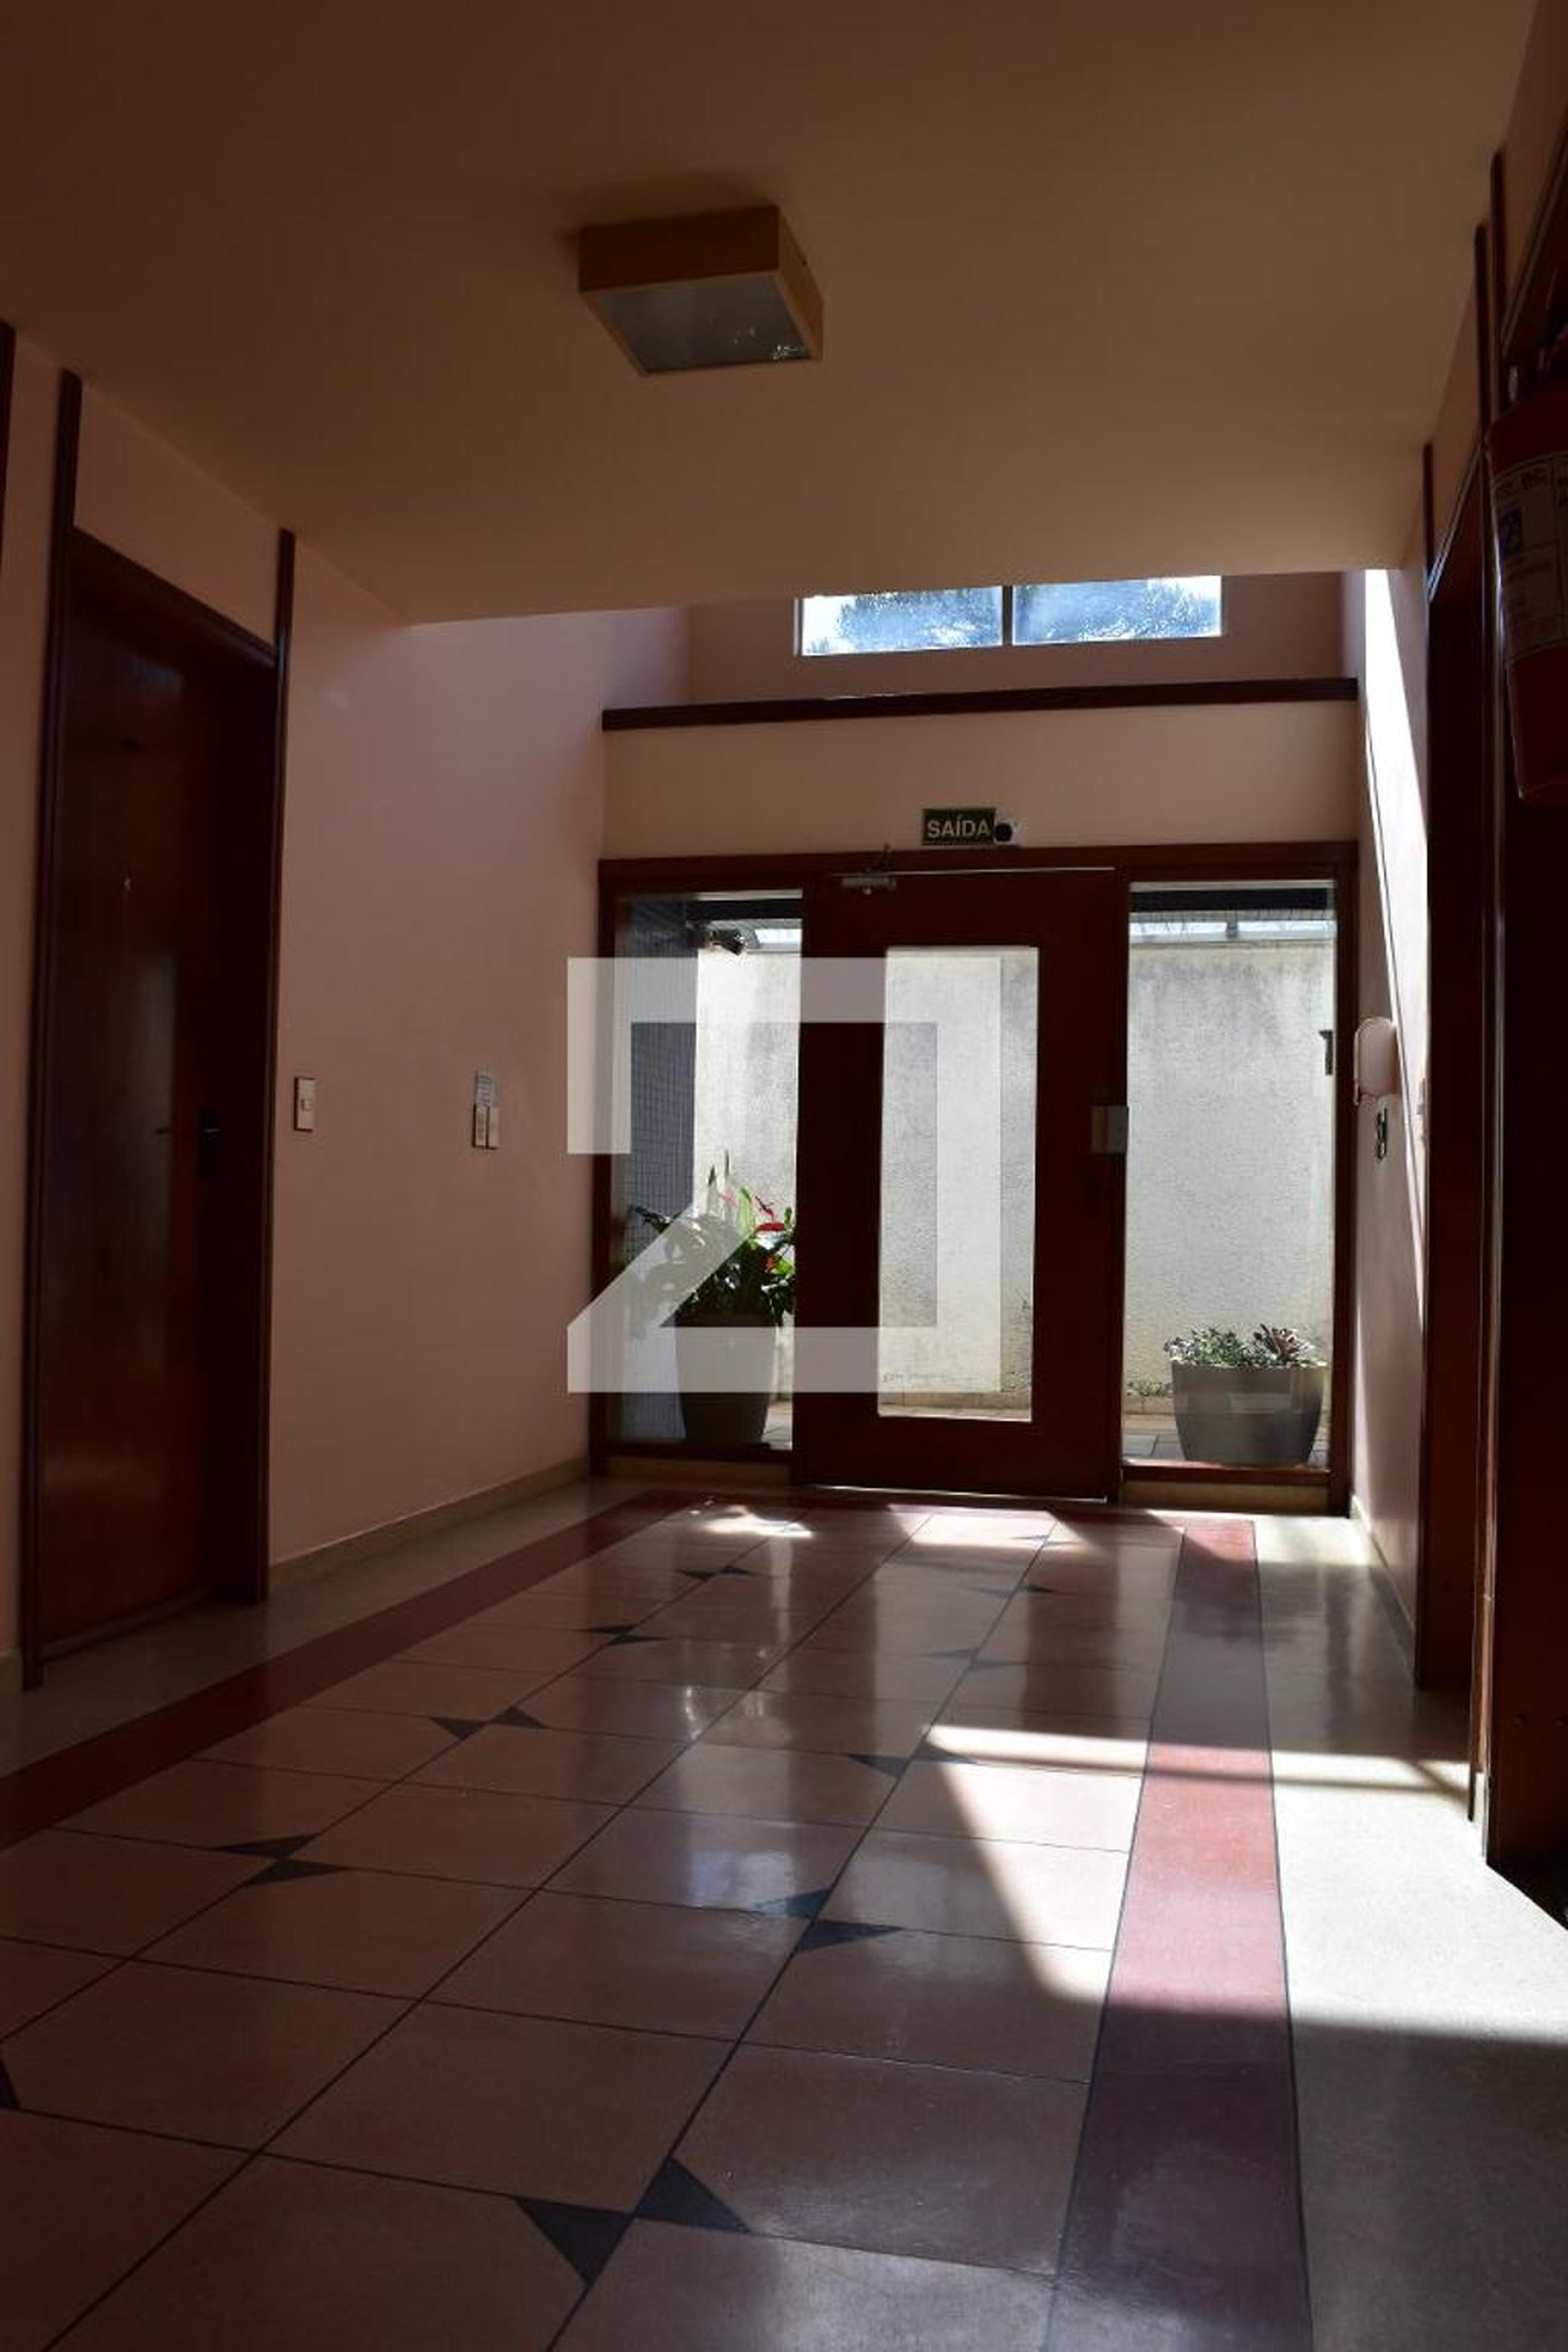 Hall de entrada - Edifício Armando Cicarelli